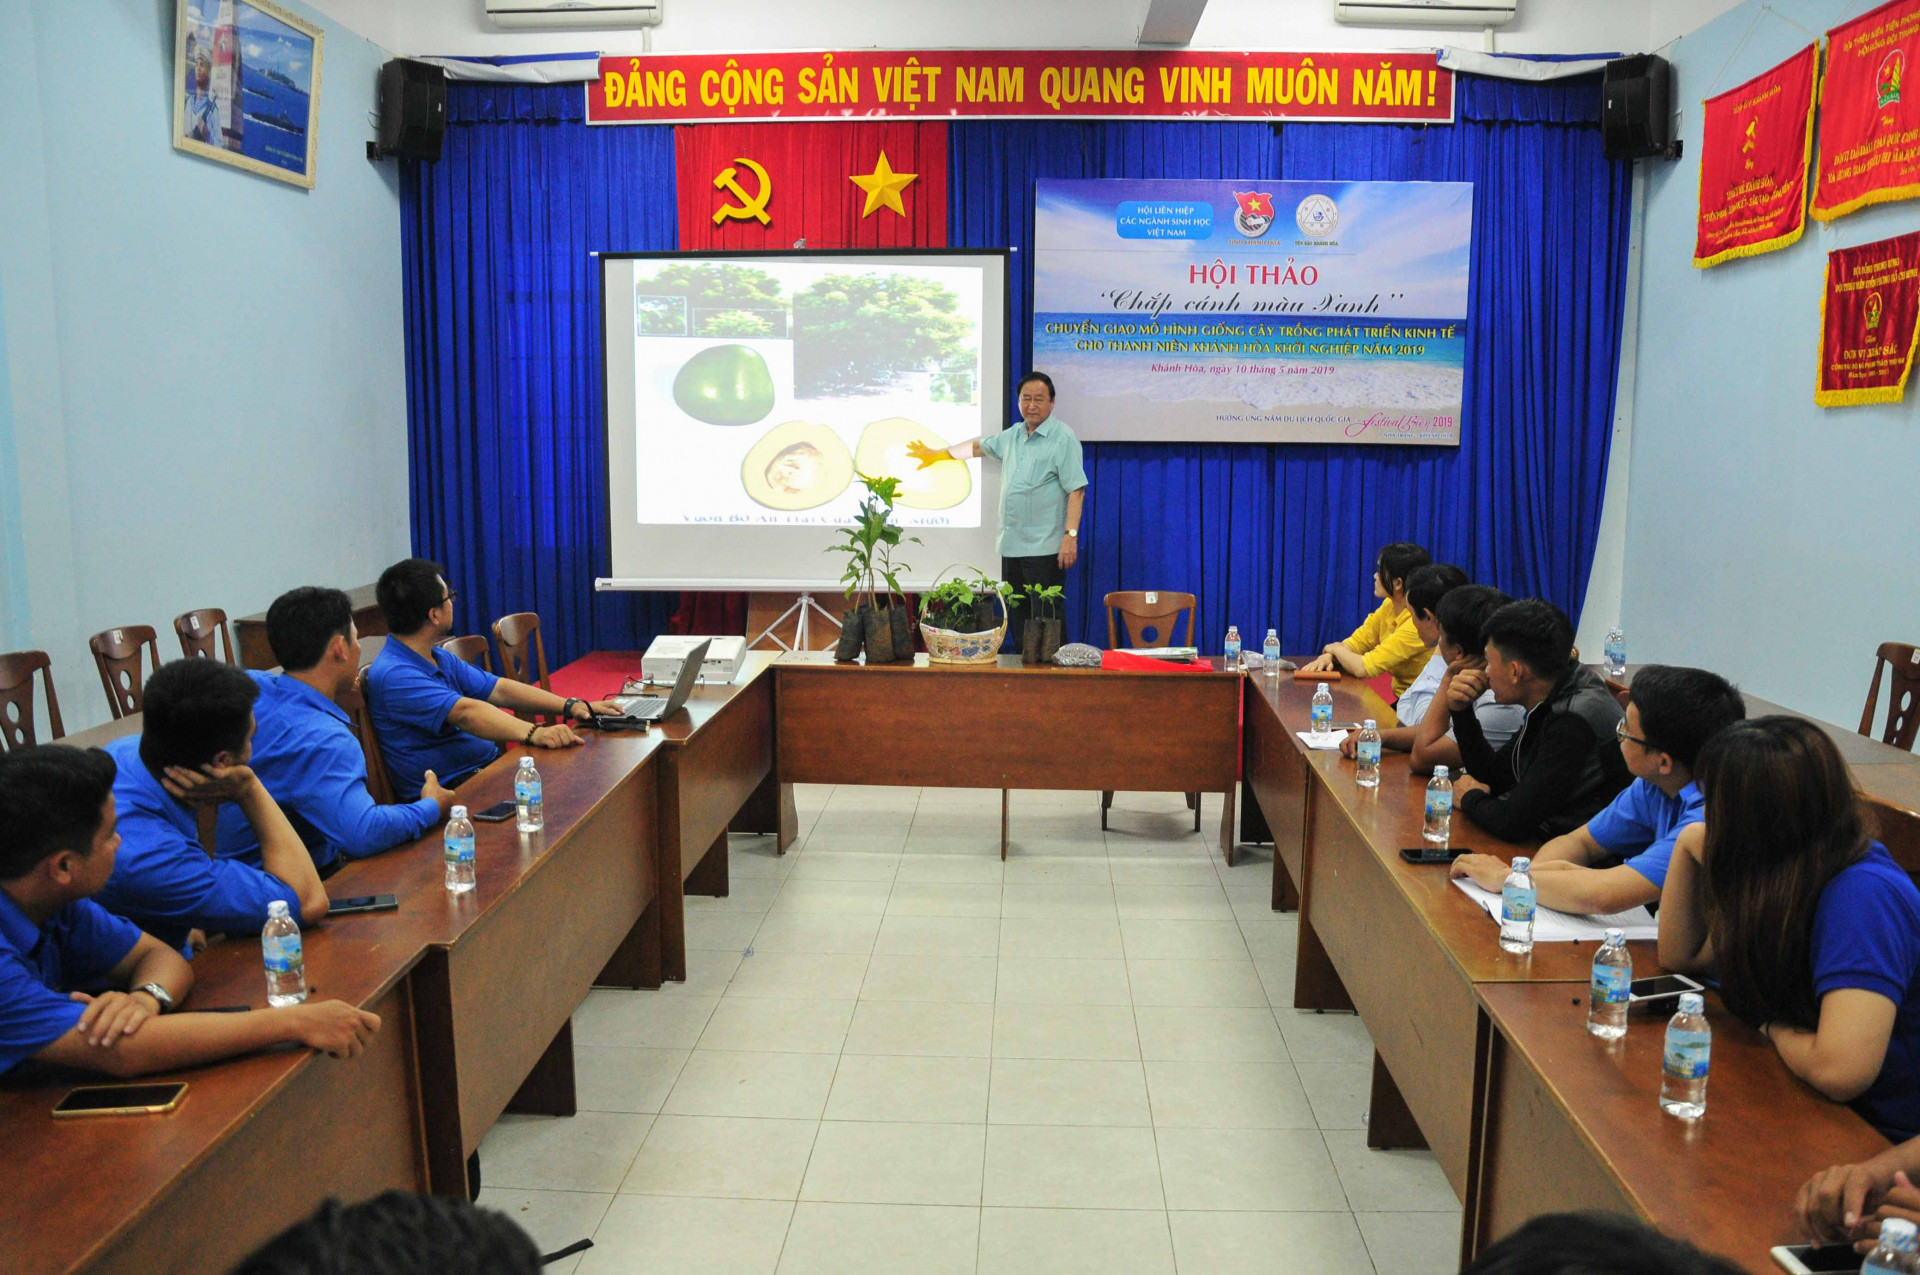 Giáo sư Nguyễn Lân Hùng hướng dẫn, chuyển giao kỹ thuật trồng các loại cây phát triển kinh tế cho đoàn viên, thanh niên